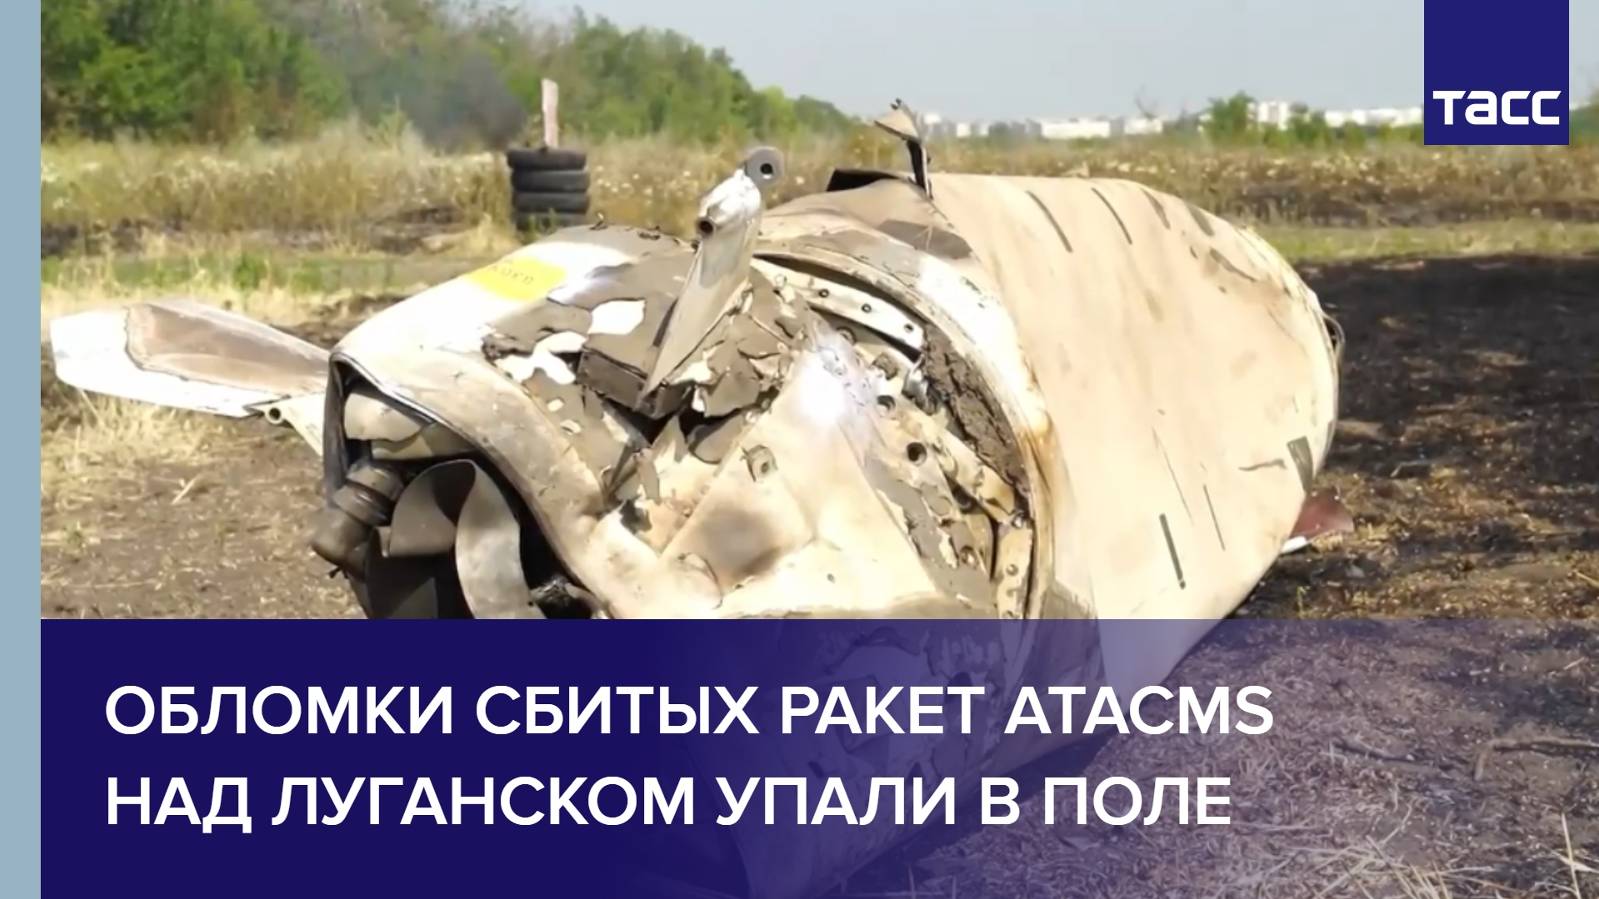 Обломки сбитых ракет ATACMS над Луганском упали в поле